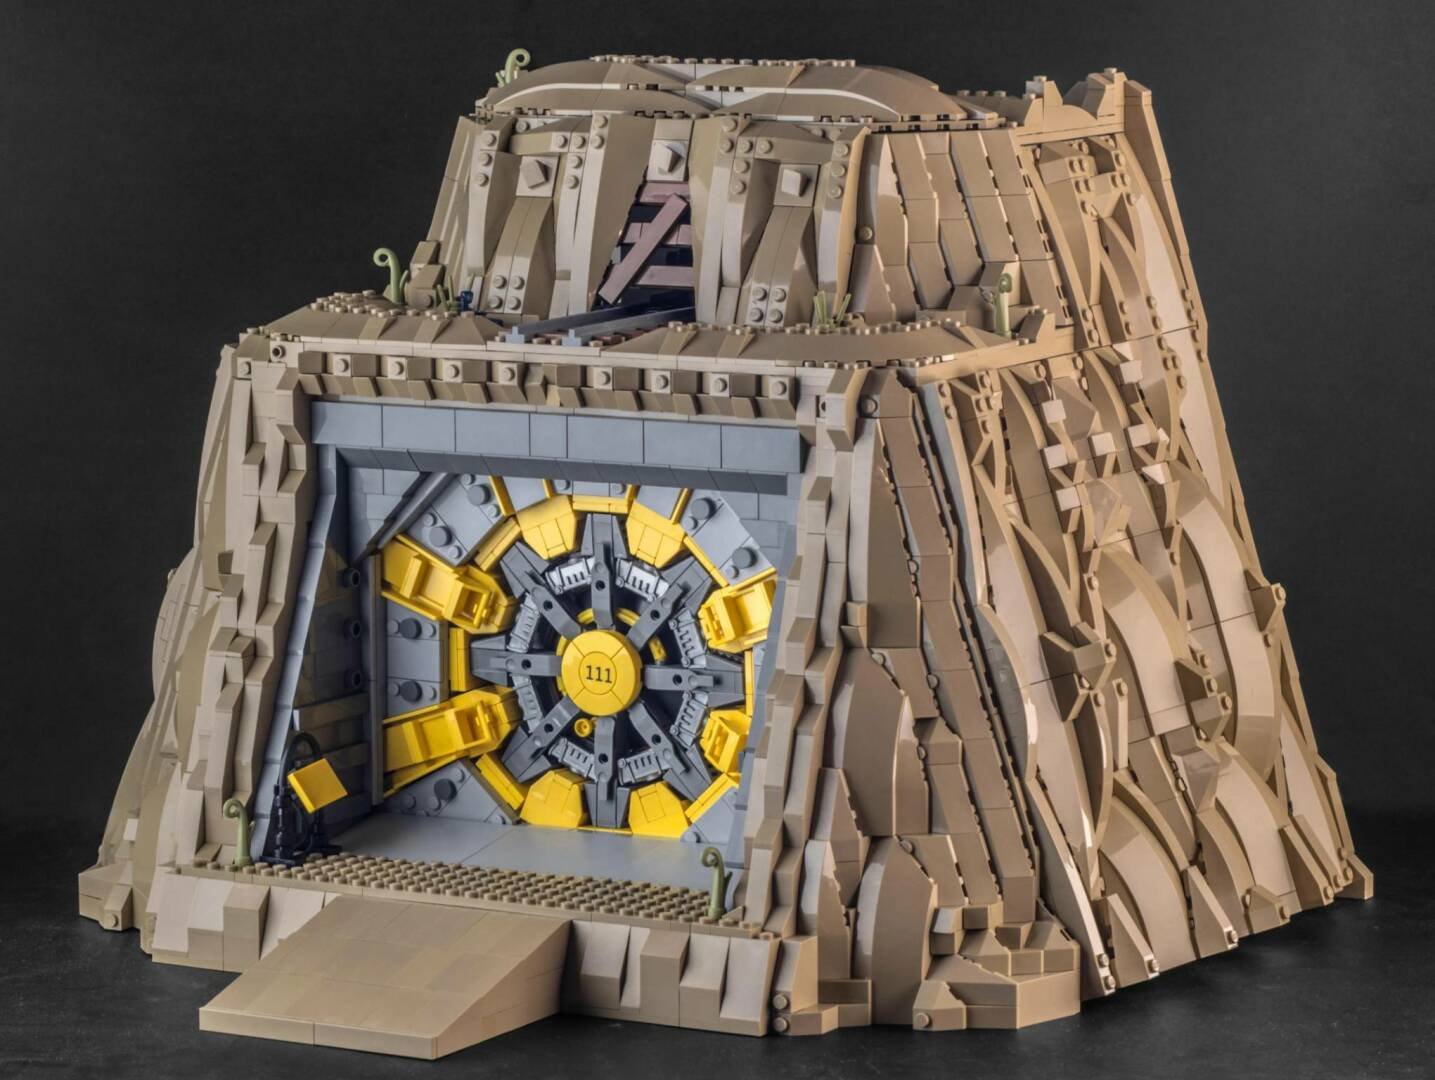 Fallout: qualcuno ha costruito un Vault LEGO che funziona davvero!